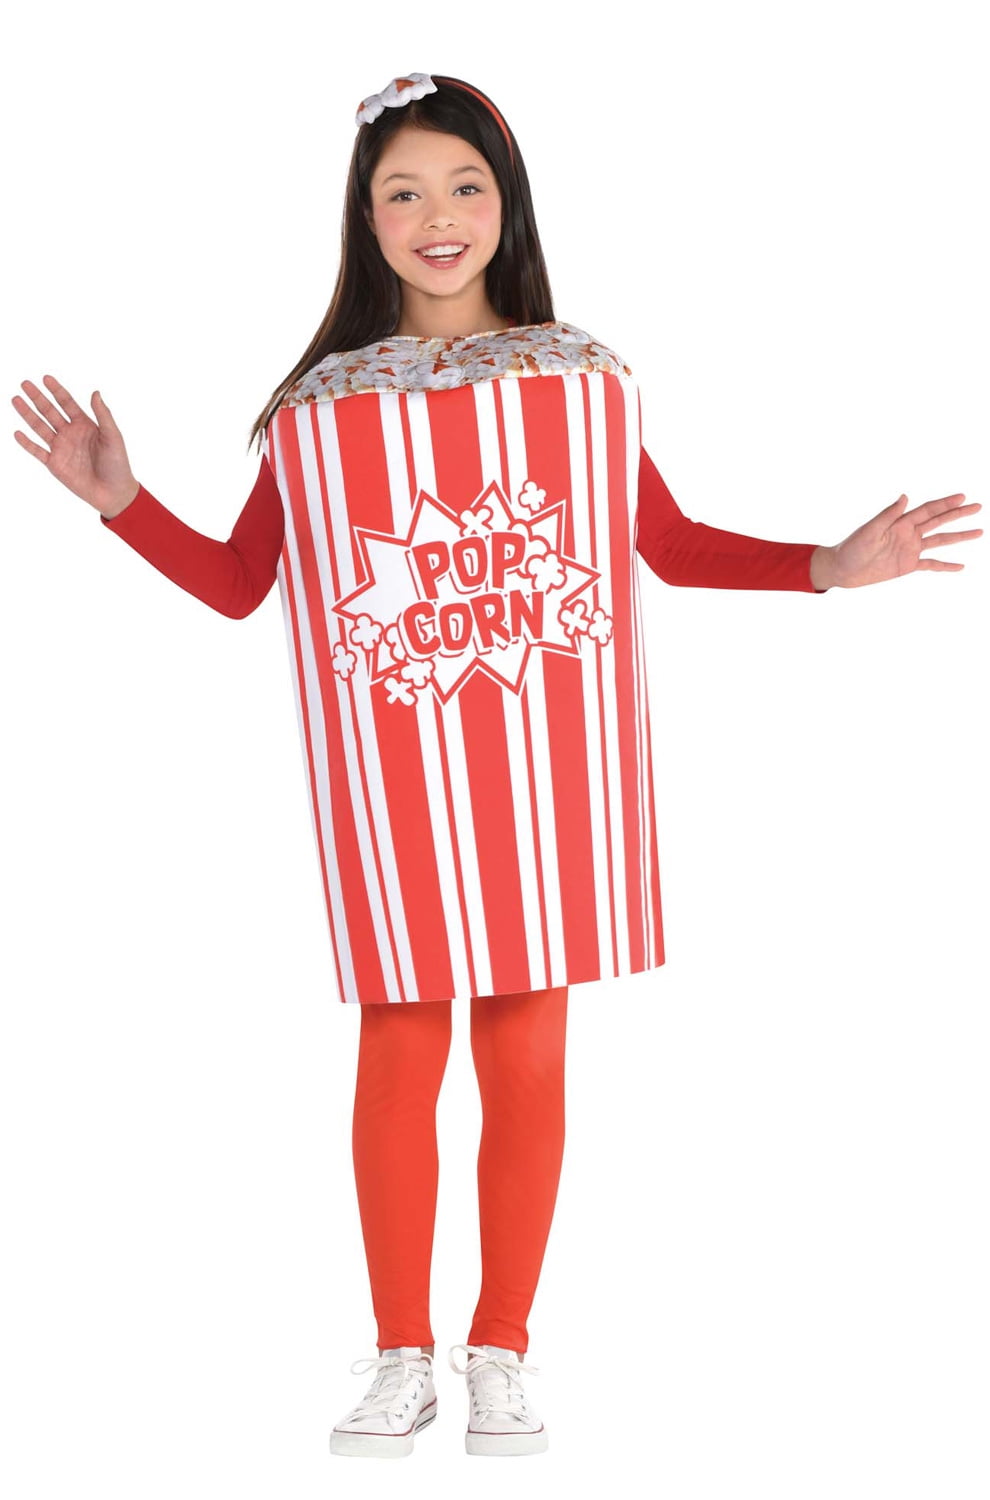 Popcorn Child Costume - Walmart.com